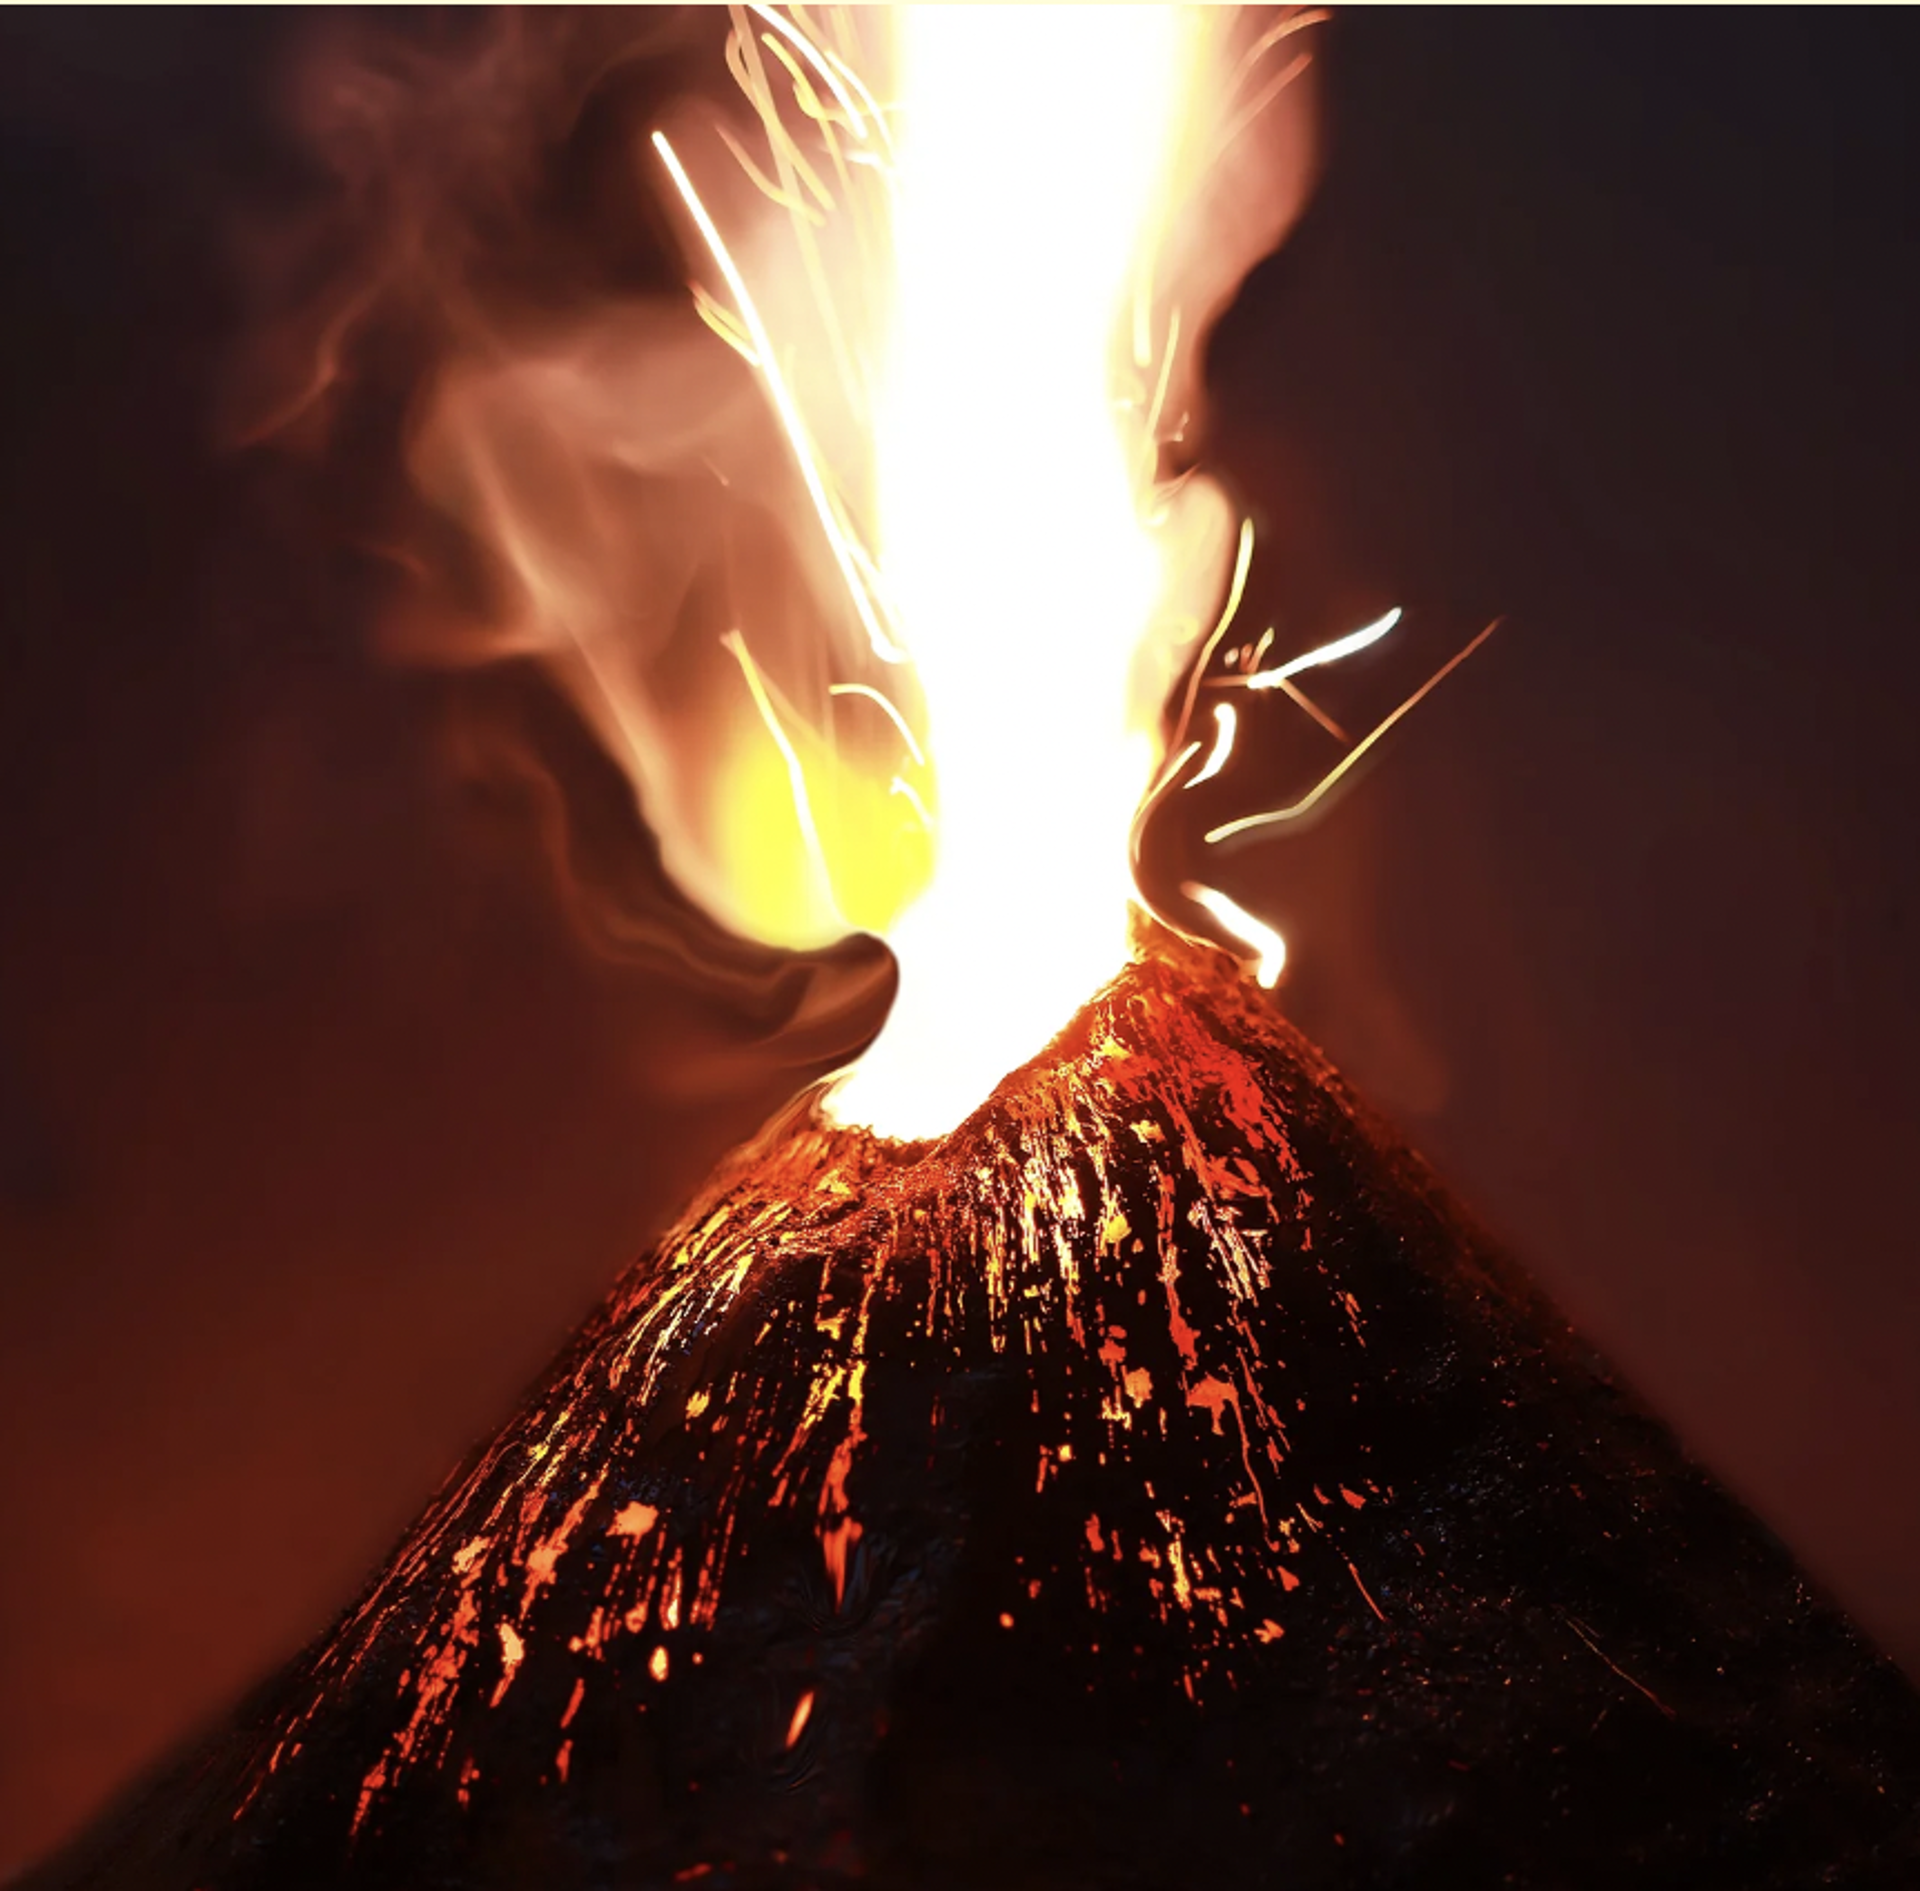 Volcano by Stephen Dorsett